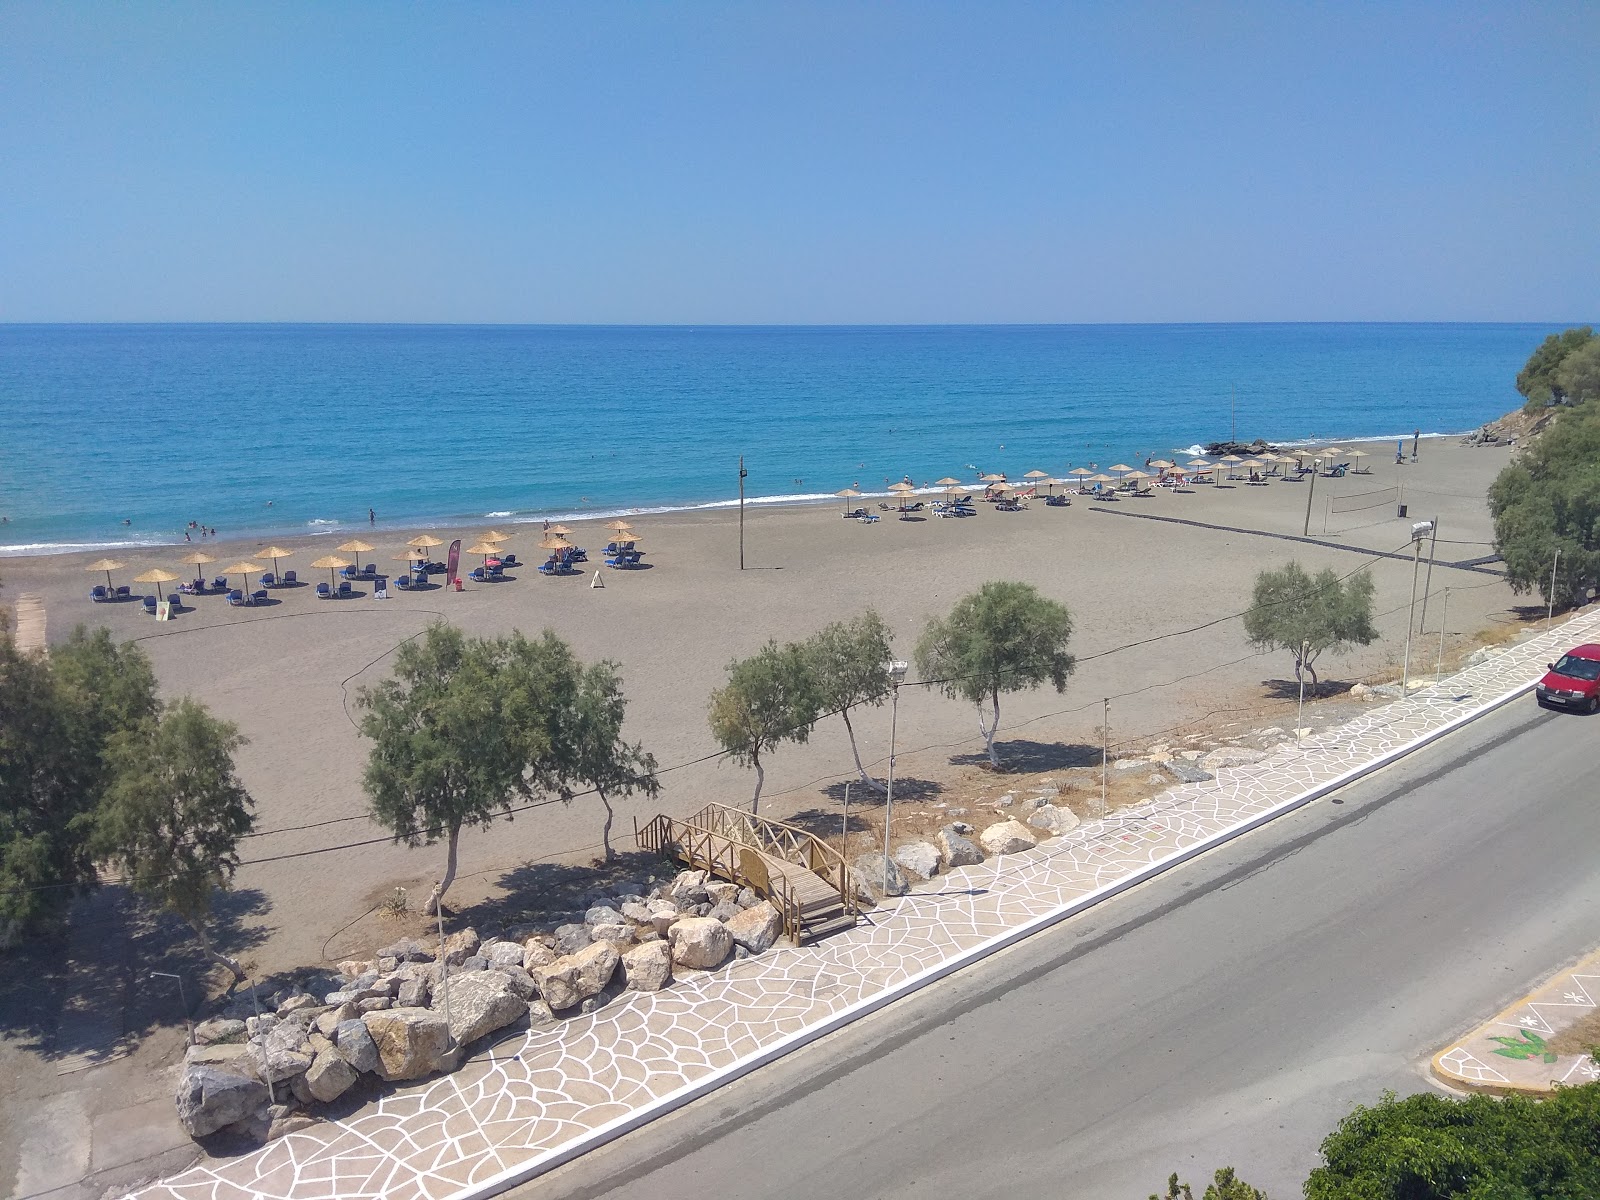 Fotografie cu Arvi beach - locul popular printre cunoscătorii de relaxare